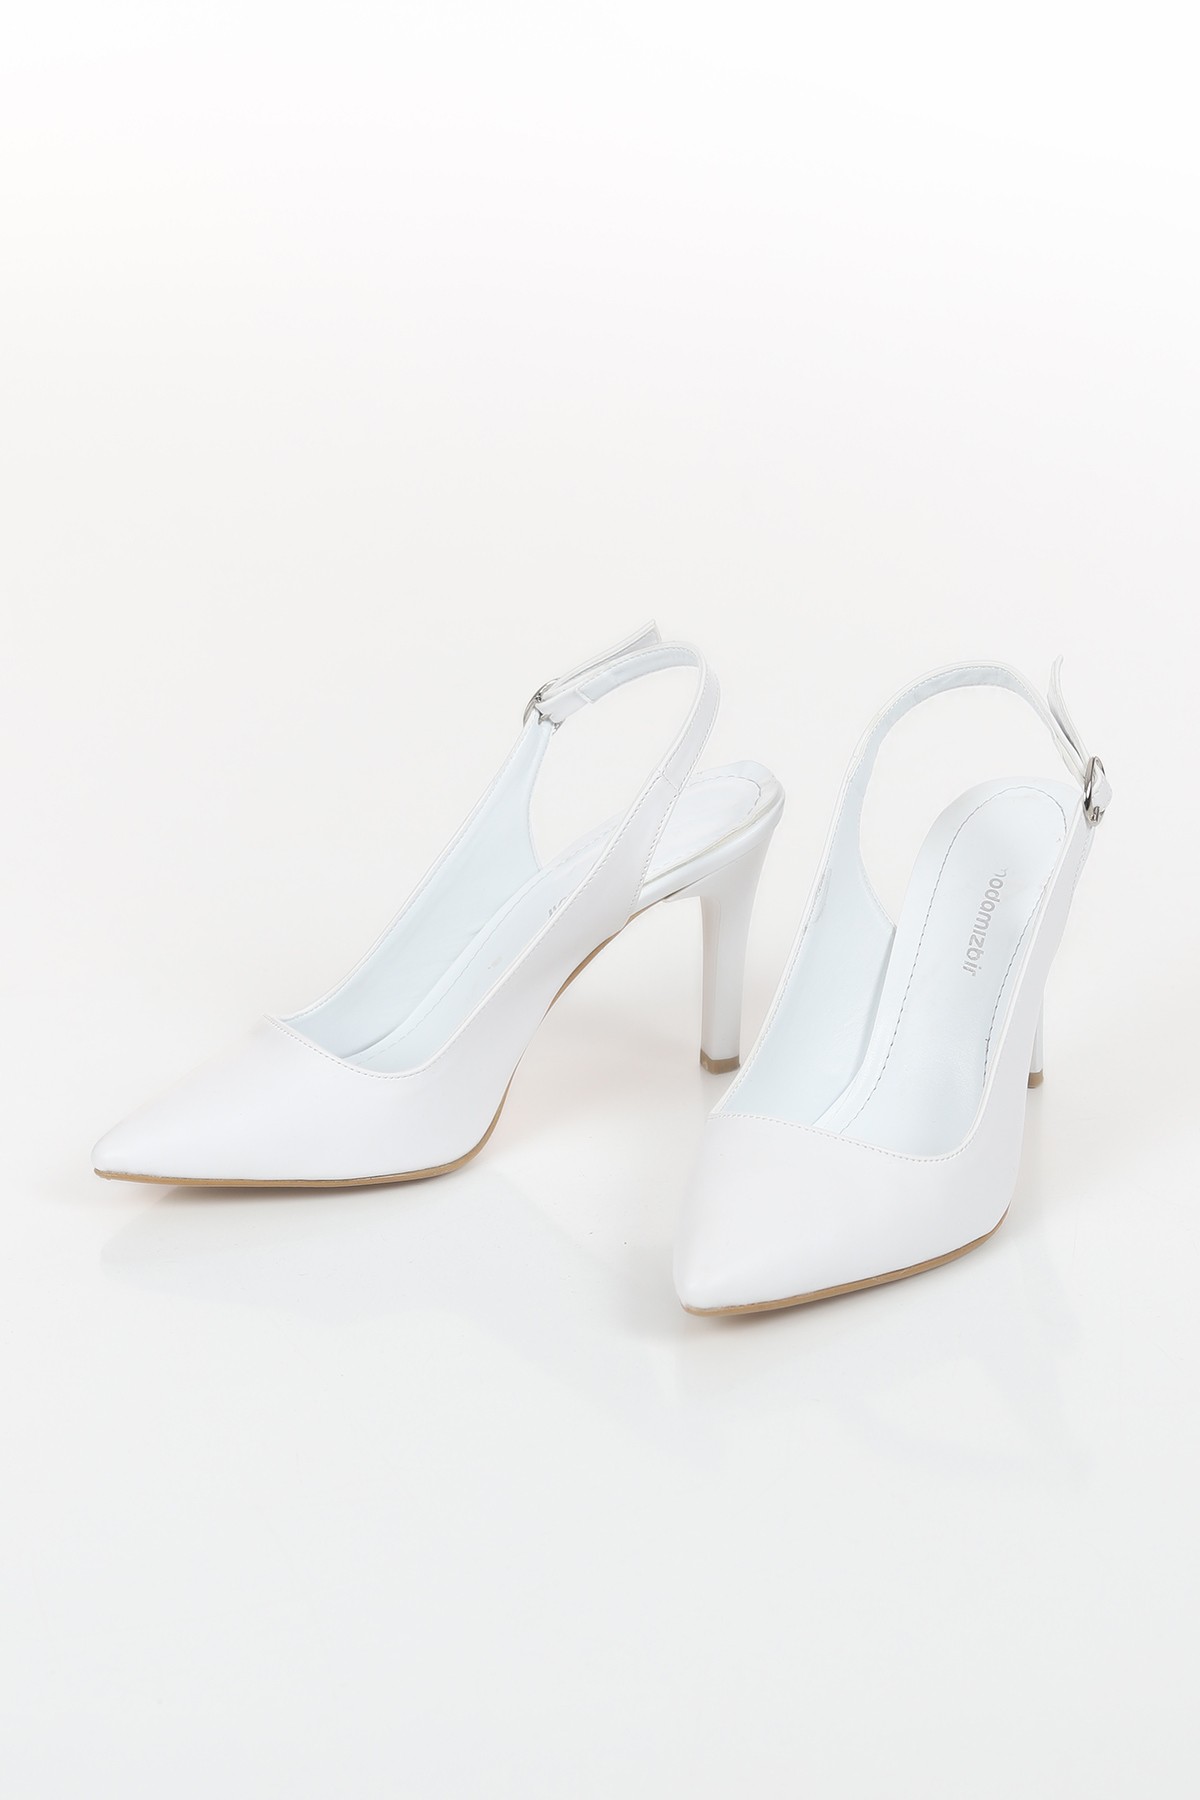 Beyaz Kemerli Topuklu Ayakkabı 118865